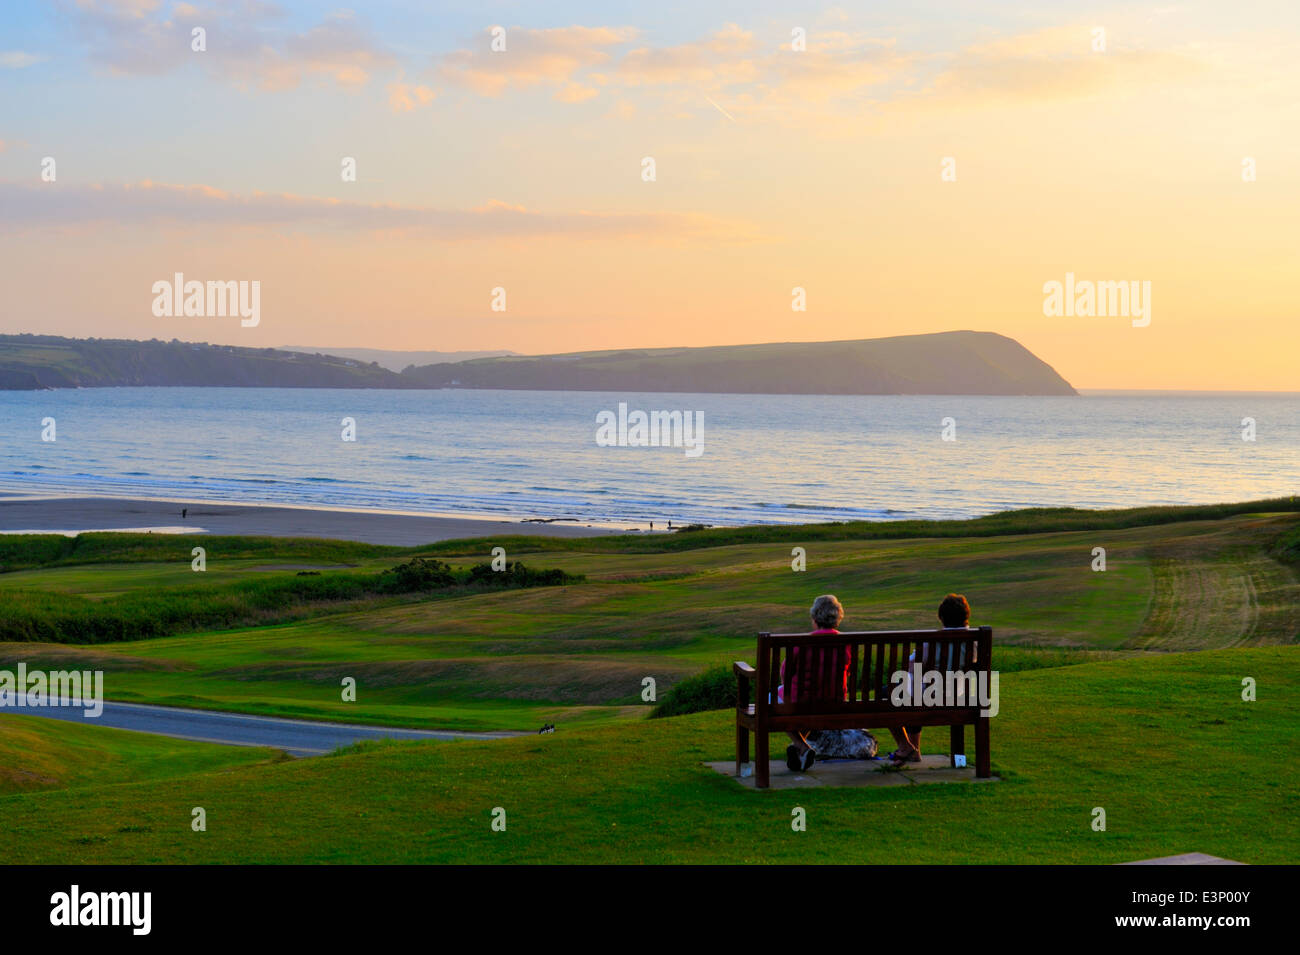 Newport Links Golf Club sunset, femme sur le banc à la péninsule de la tête vers Dinas, Newport, Pembrokeshire, Pays de Galles, Royaume-Uni Banque D'Images